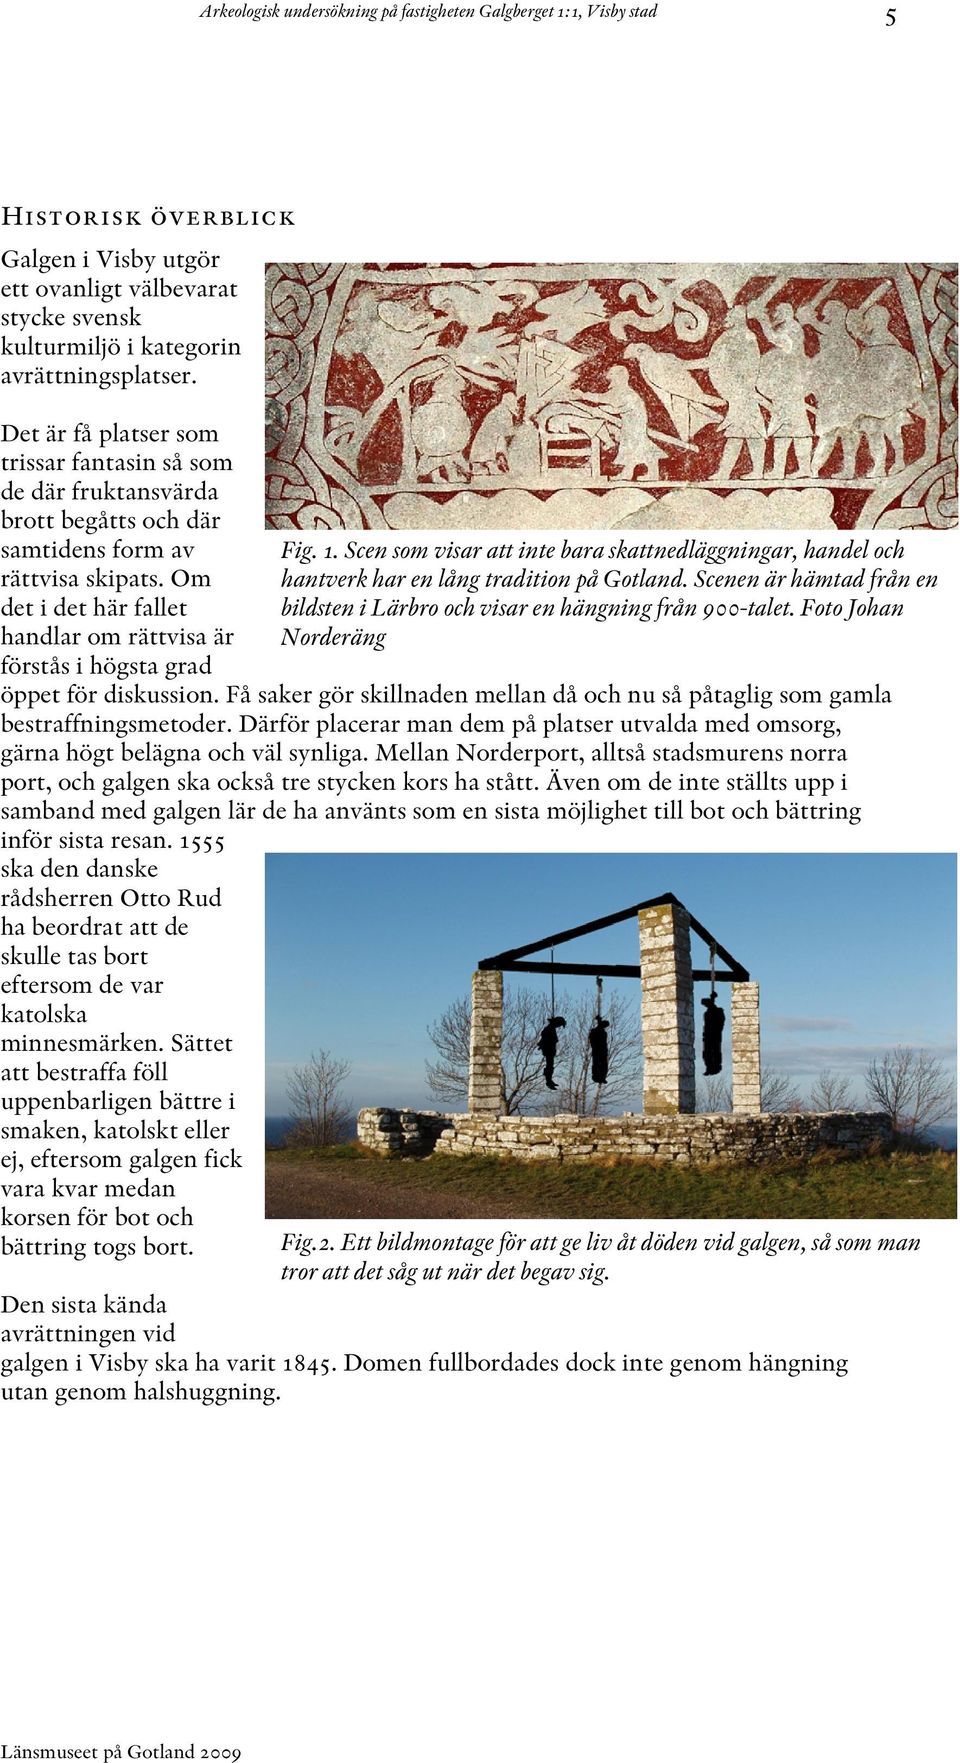 Arkeologisk förundersökning av en gammal avrättningsplats i Visby ...